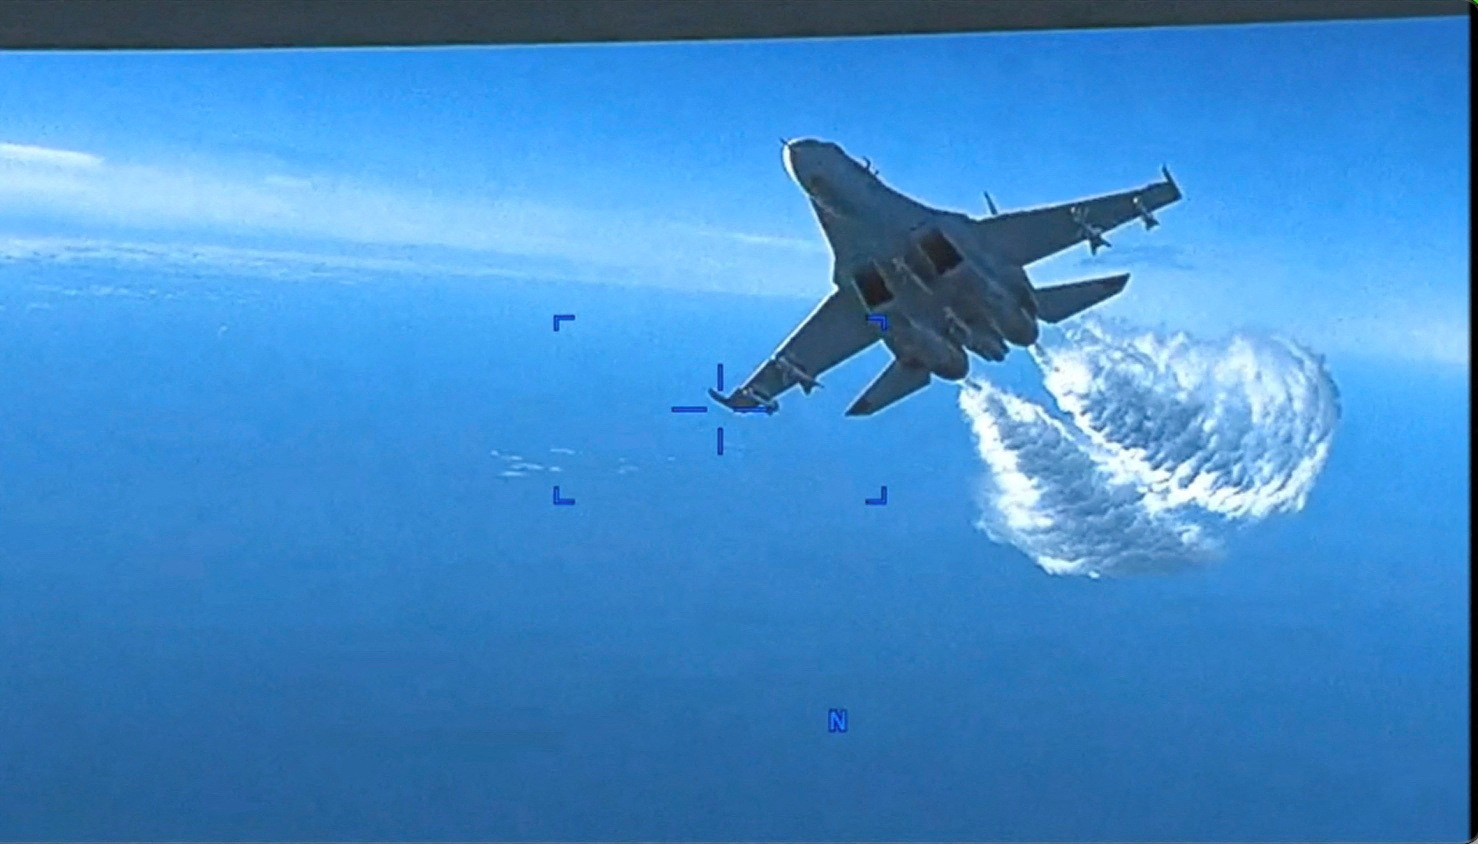 视频显示的屏幕截图ng 一架喷气式战斗机在空中航行，背后有云层。 